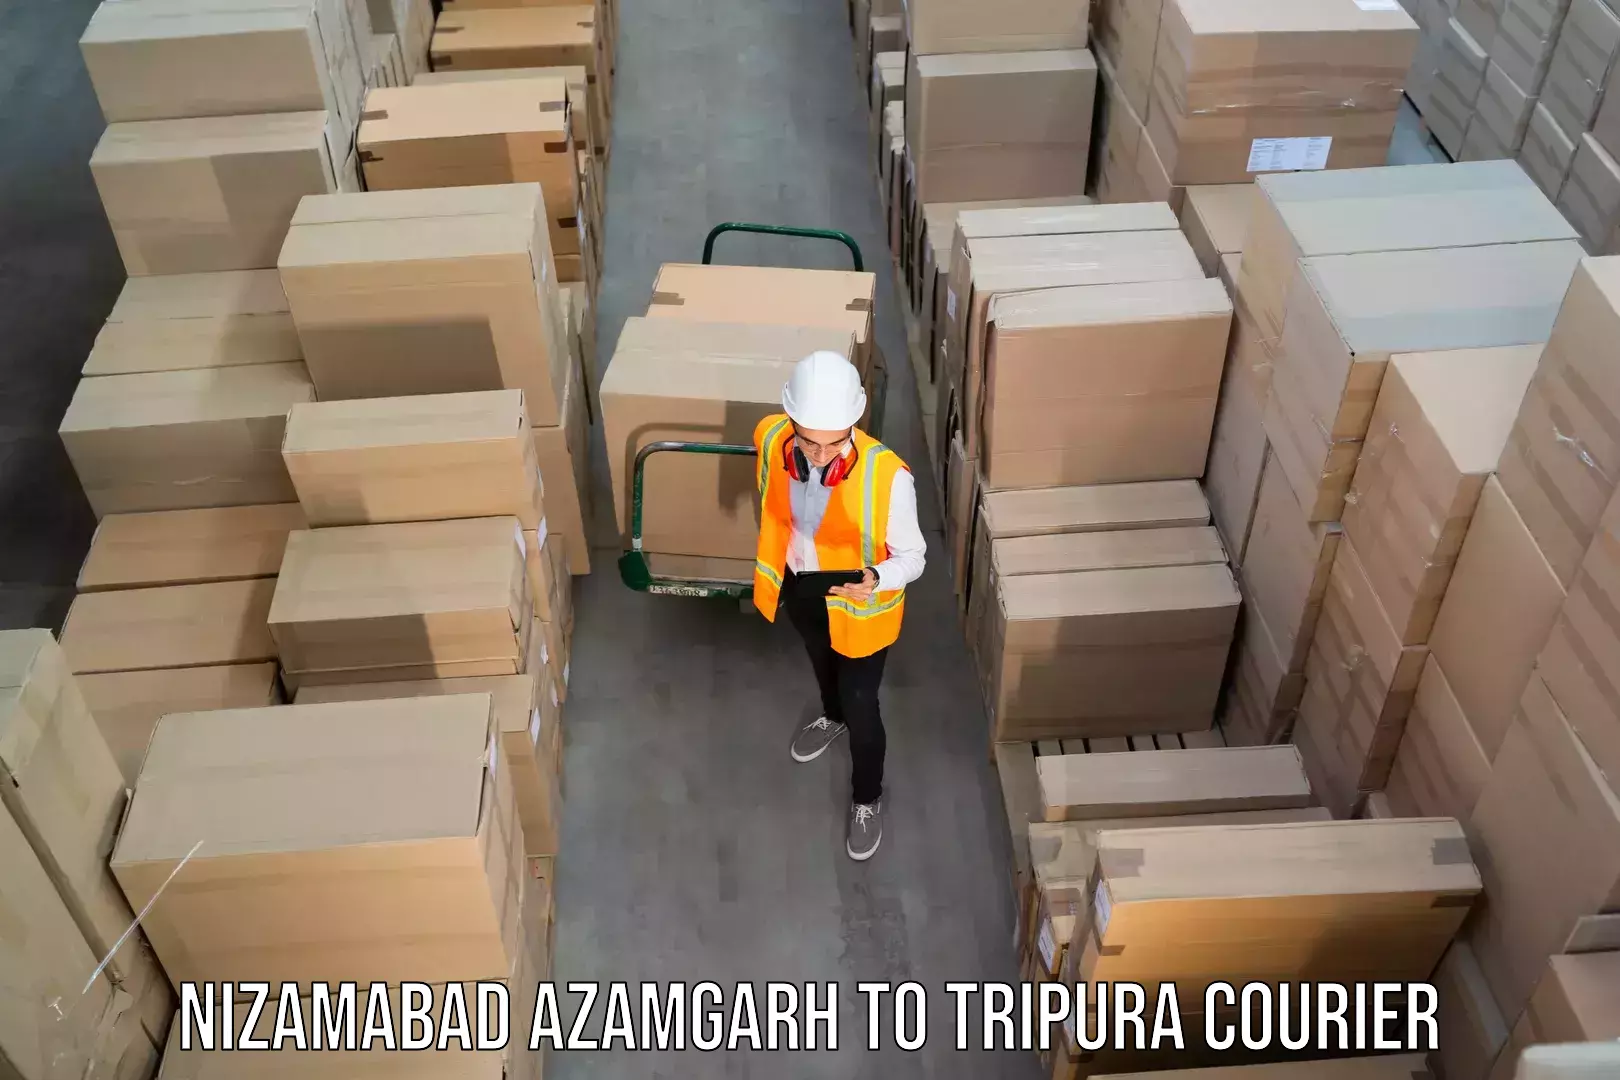 Professional courier services Nizamabad Azamgarh to Amarpur Gomati